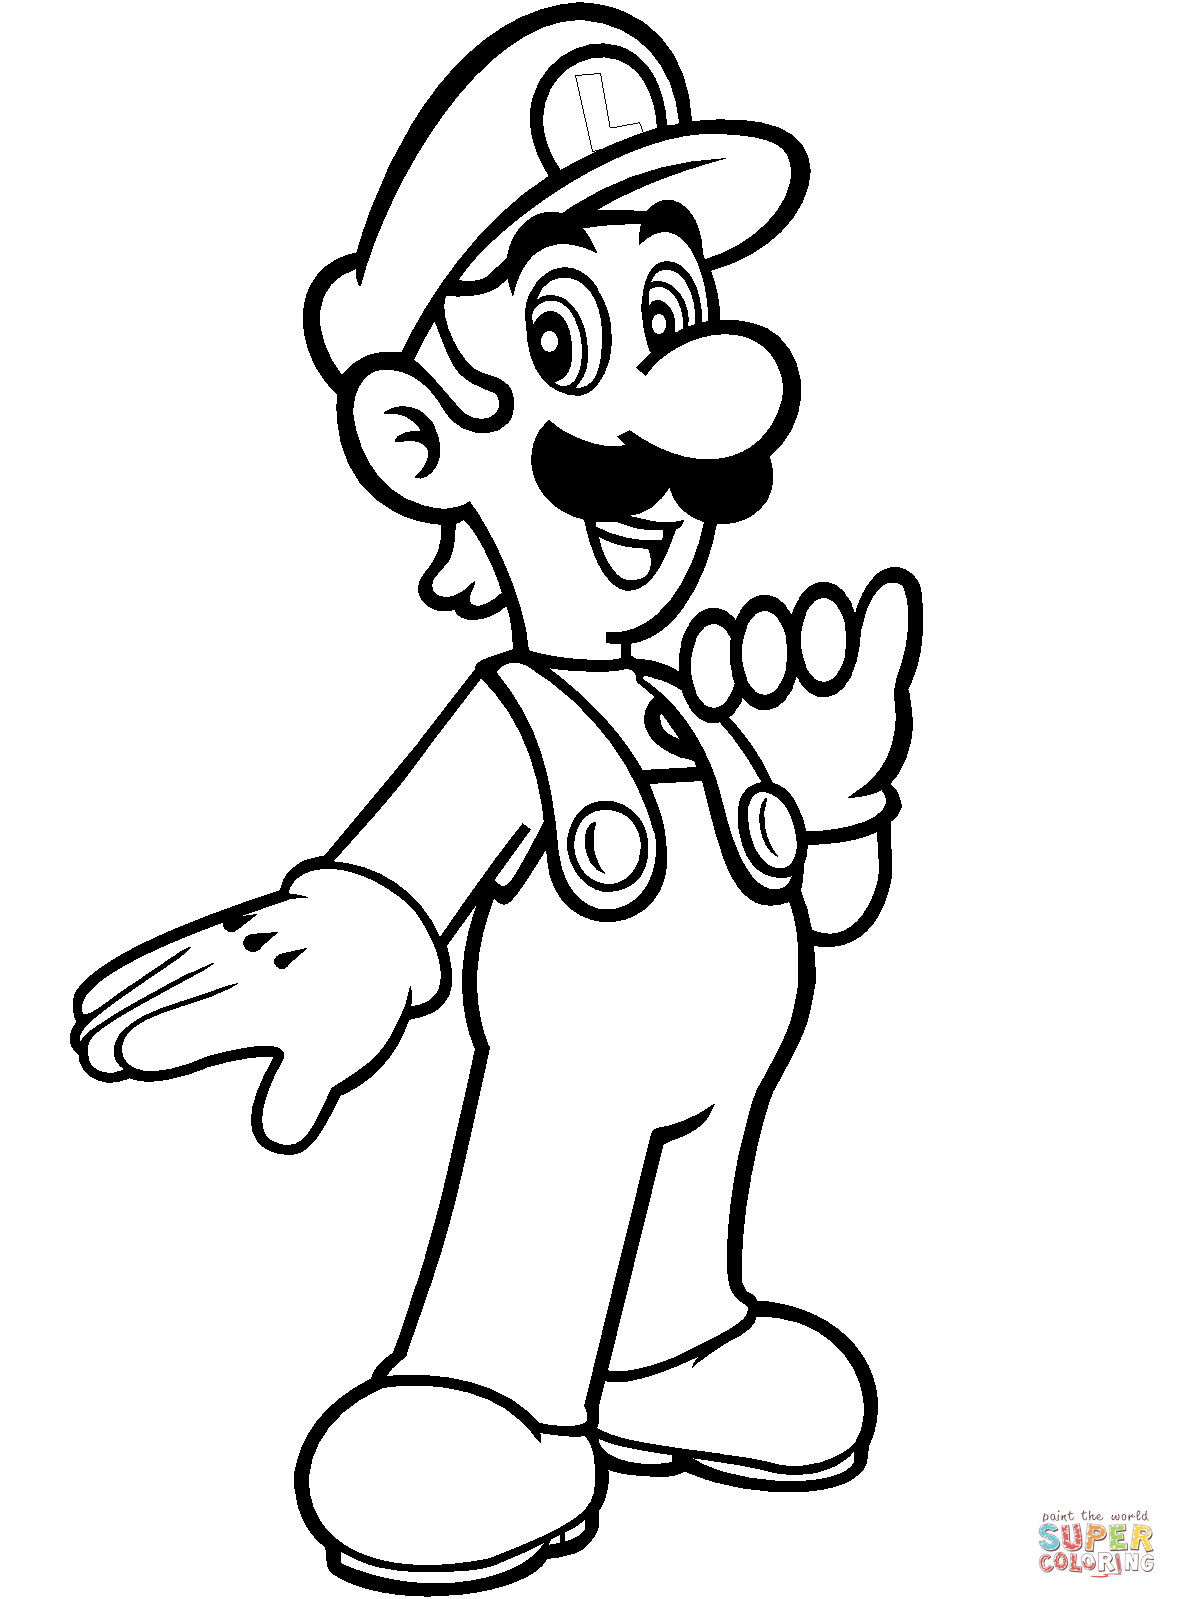 Coloring Pages Mario
 Luigi from Mario Bros coloring page